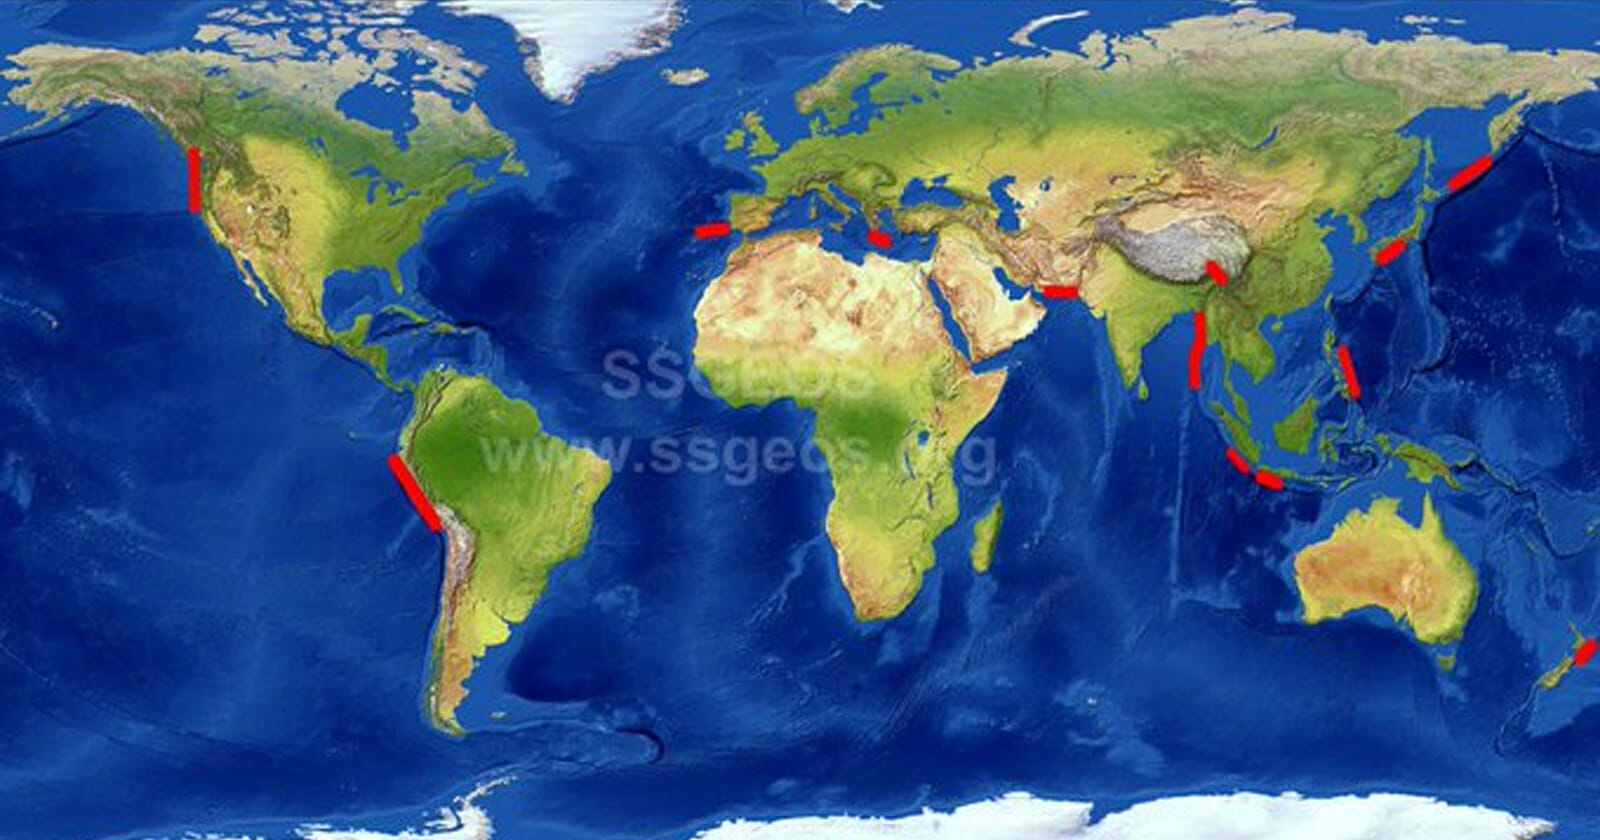 خريطة حمراء نشرها العالم الهولندي watanserb.com